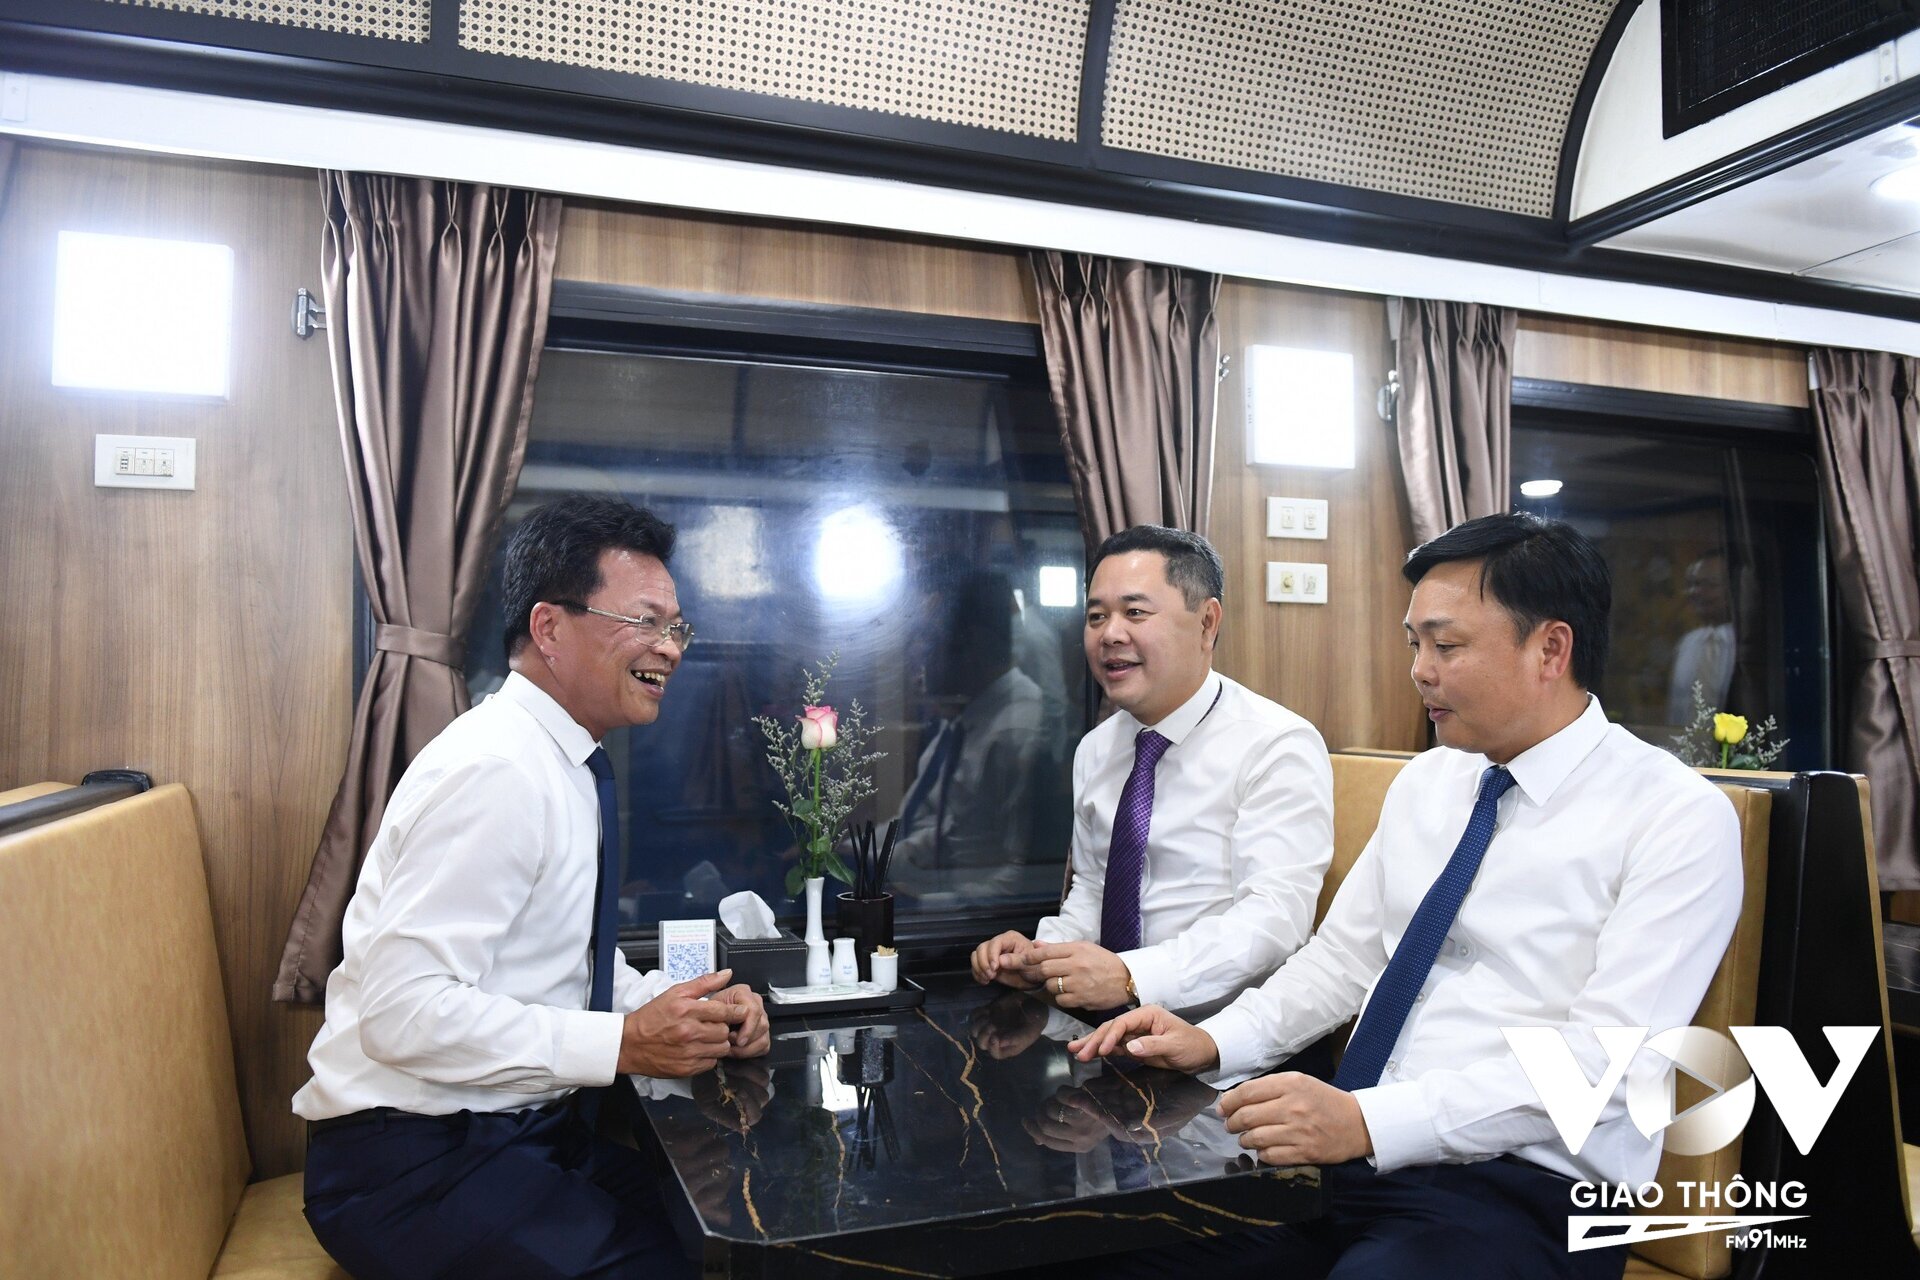 Ông Đặng Sỹ Mạnh - Chủ tịch VNR (bên trái), ông Hoàng Gia Khánh - TGĐ VNR (bên phải đầu tiên) và ông Nguyễn Ngọc Cảnh - PCT UBQLVNN tại DN (bên phải trong cùng) trải nghiệm đoàn tàu chất lượng cao Hà Nội - Đà Nẵng